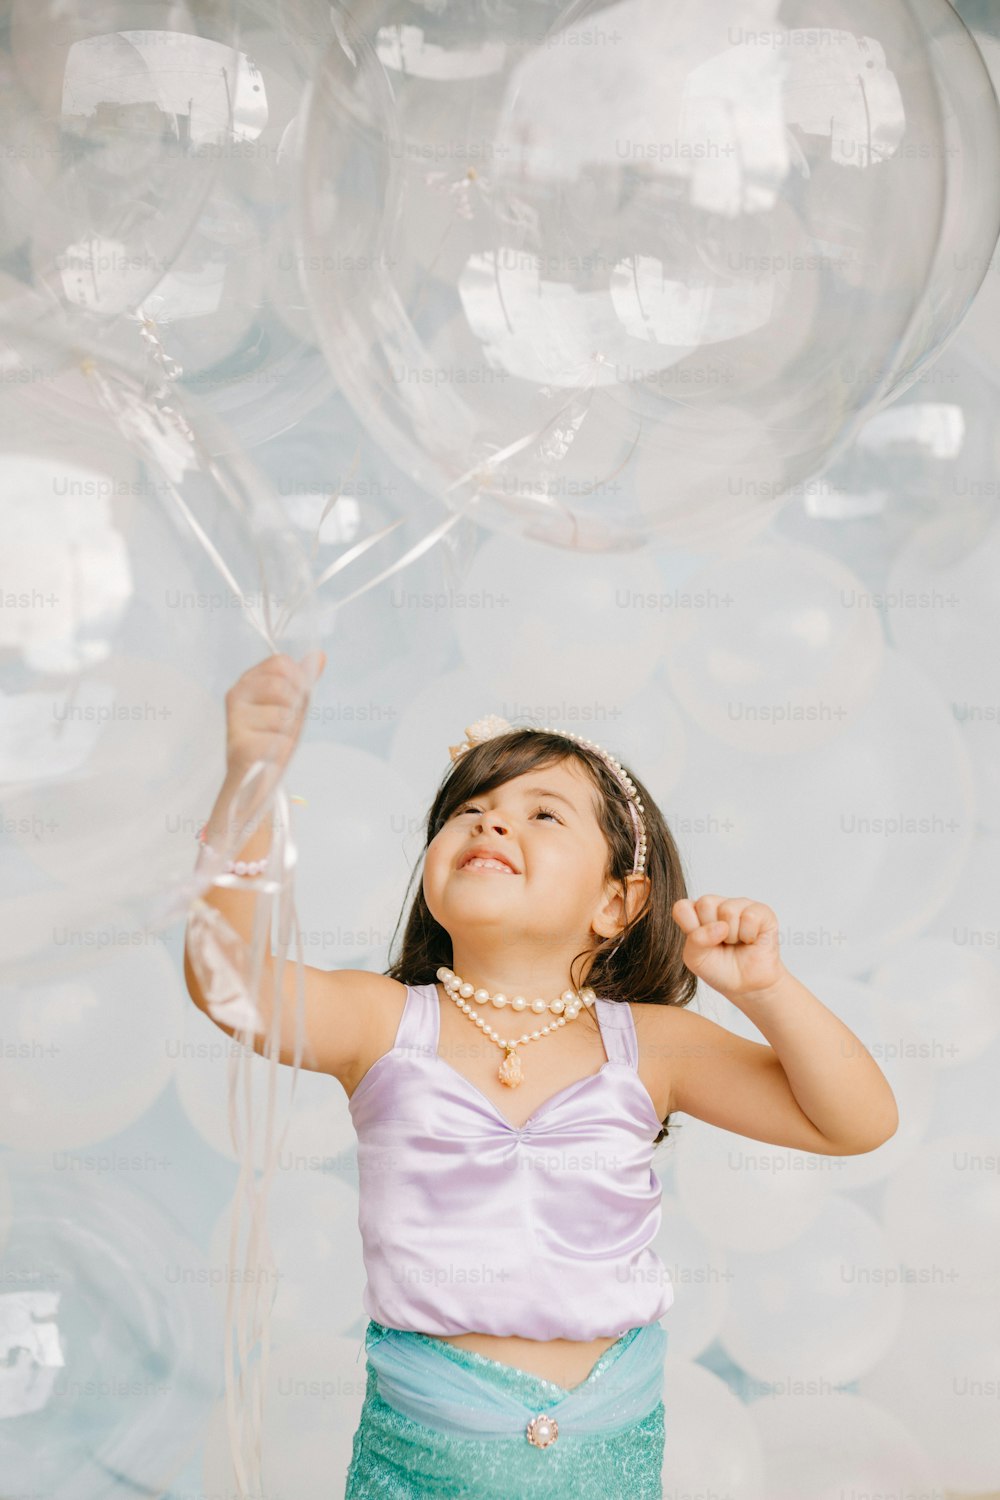 Une petite fille tenant un tas de ballons transparents